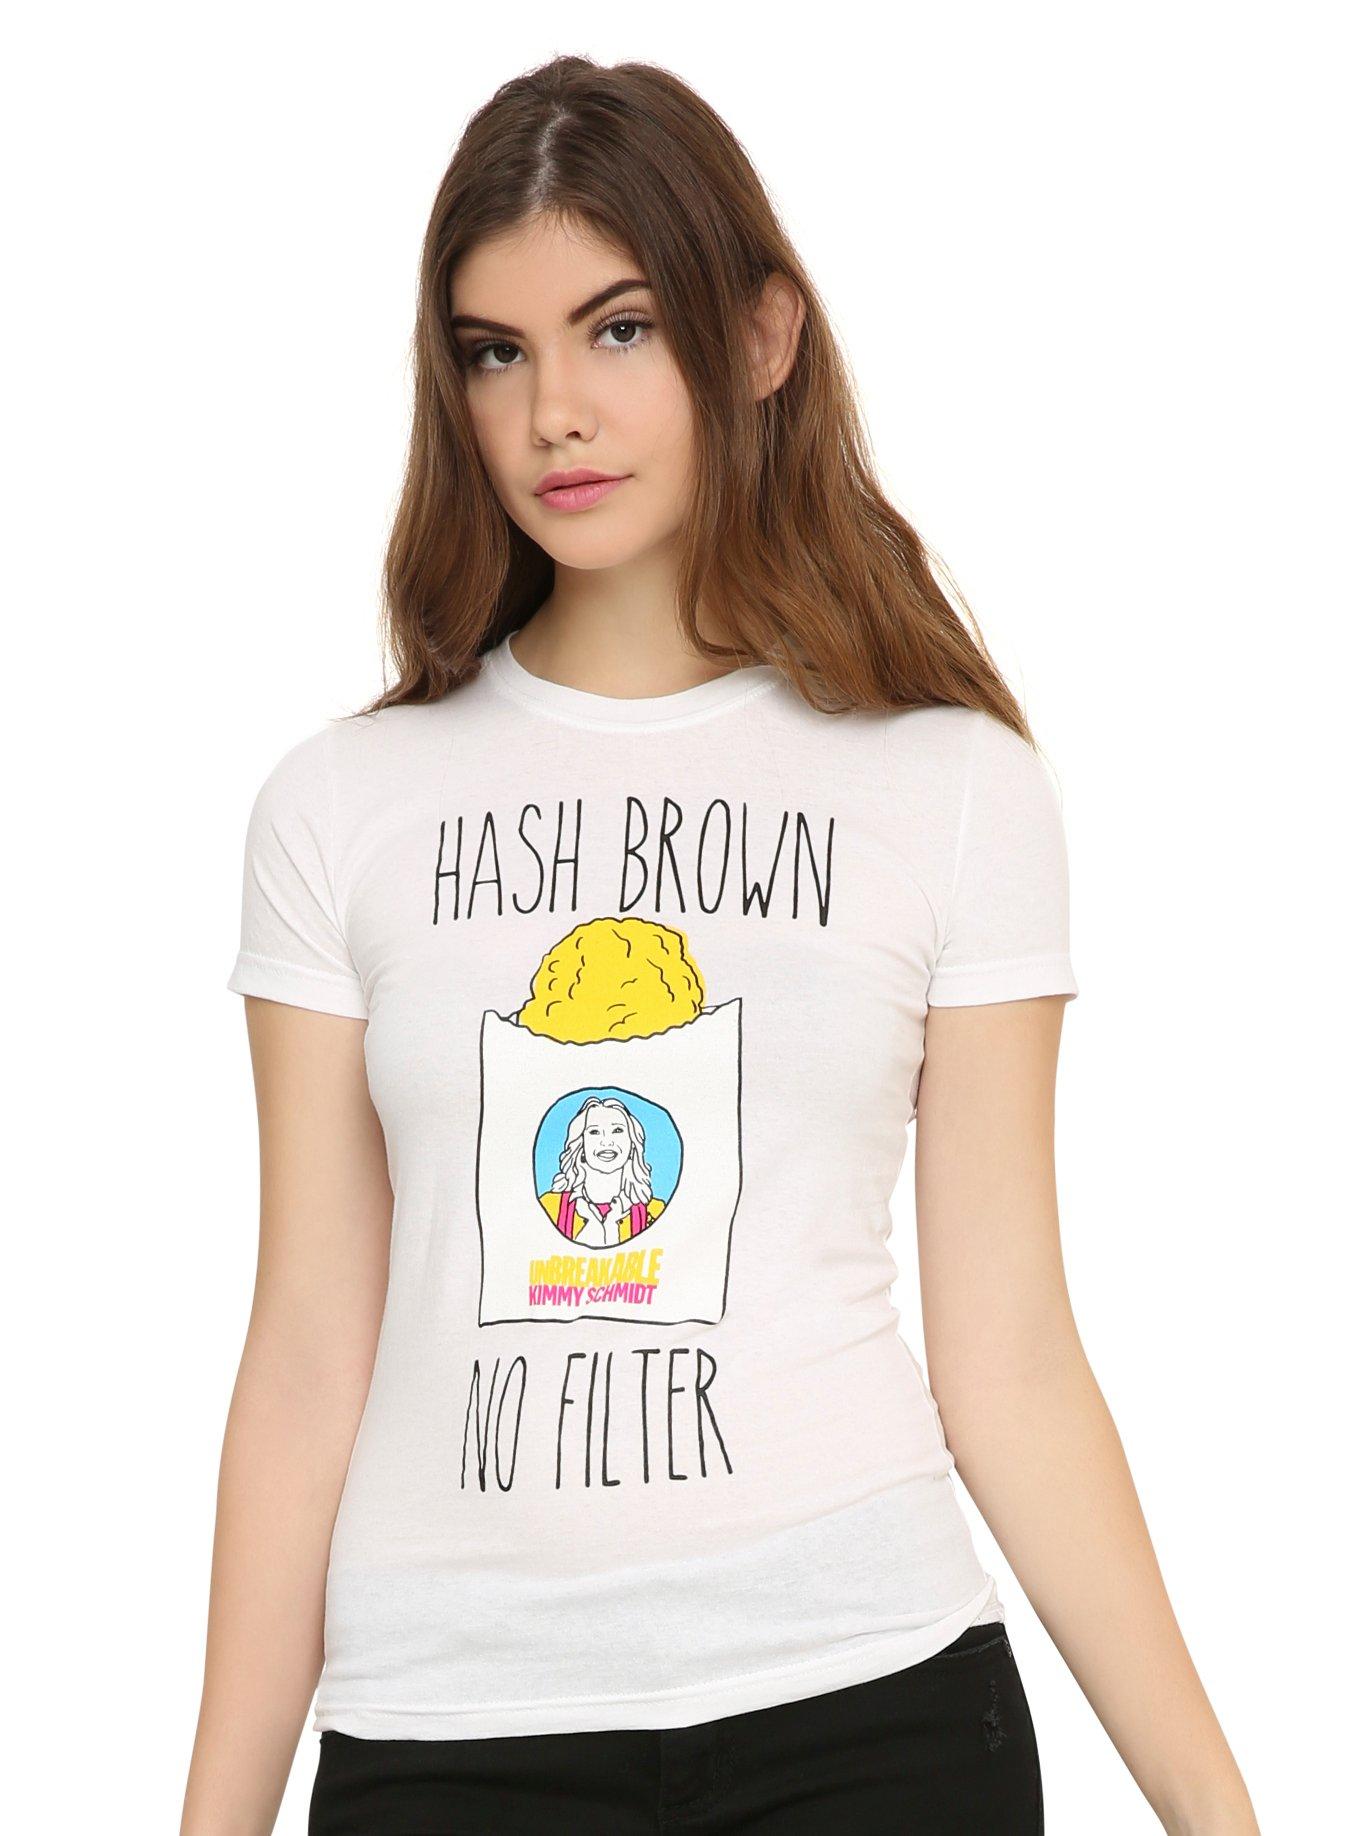 Unbreakable Kimmy Schmidt Hash Brown No Filter Girls T-Shirt, , hi-res